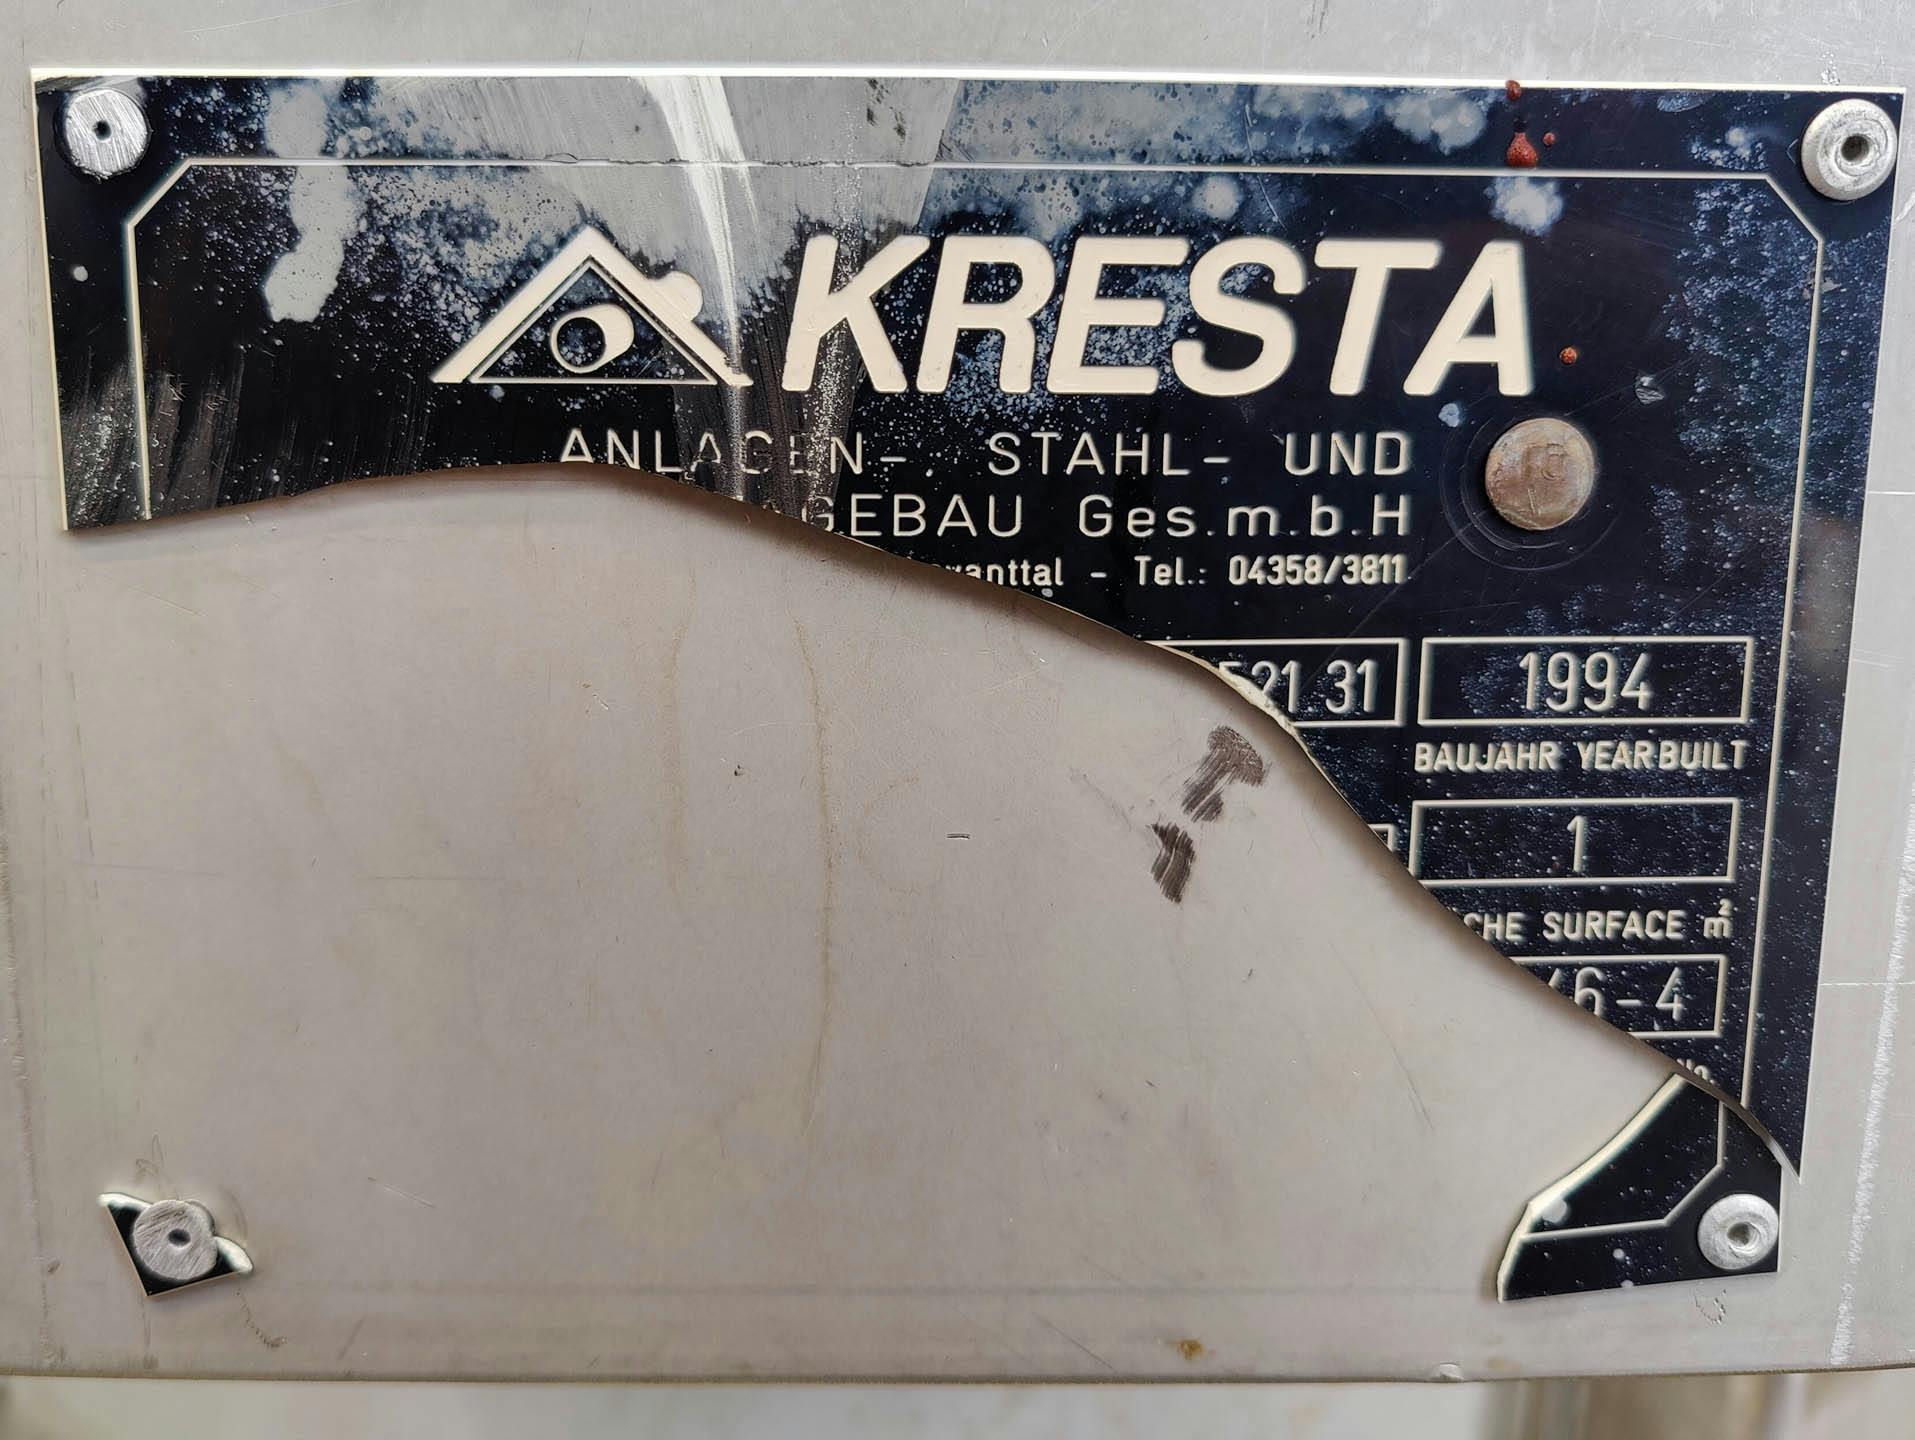 Kresta 250 Ltr. - Cuve pressurisable - image 7